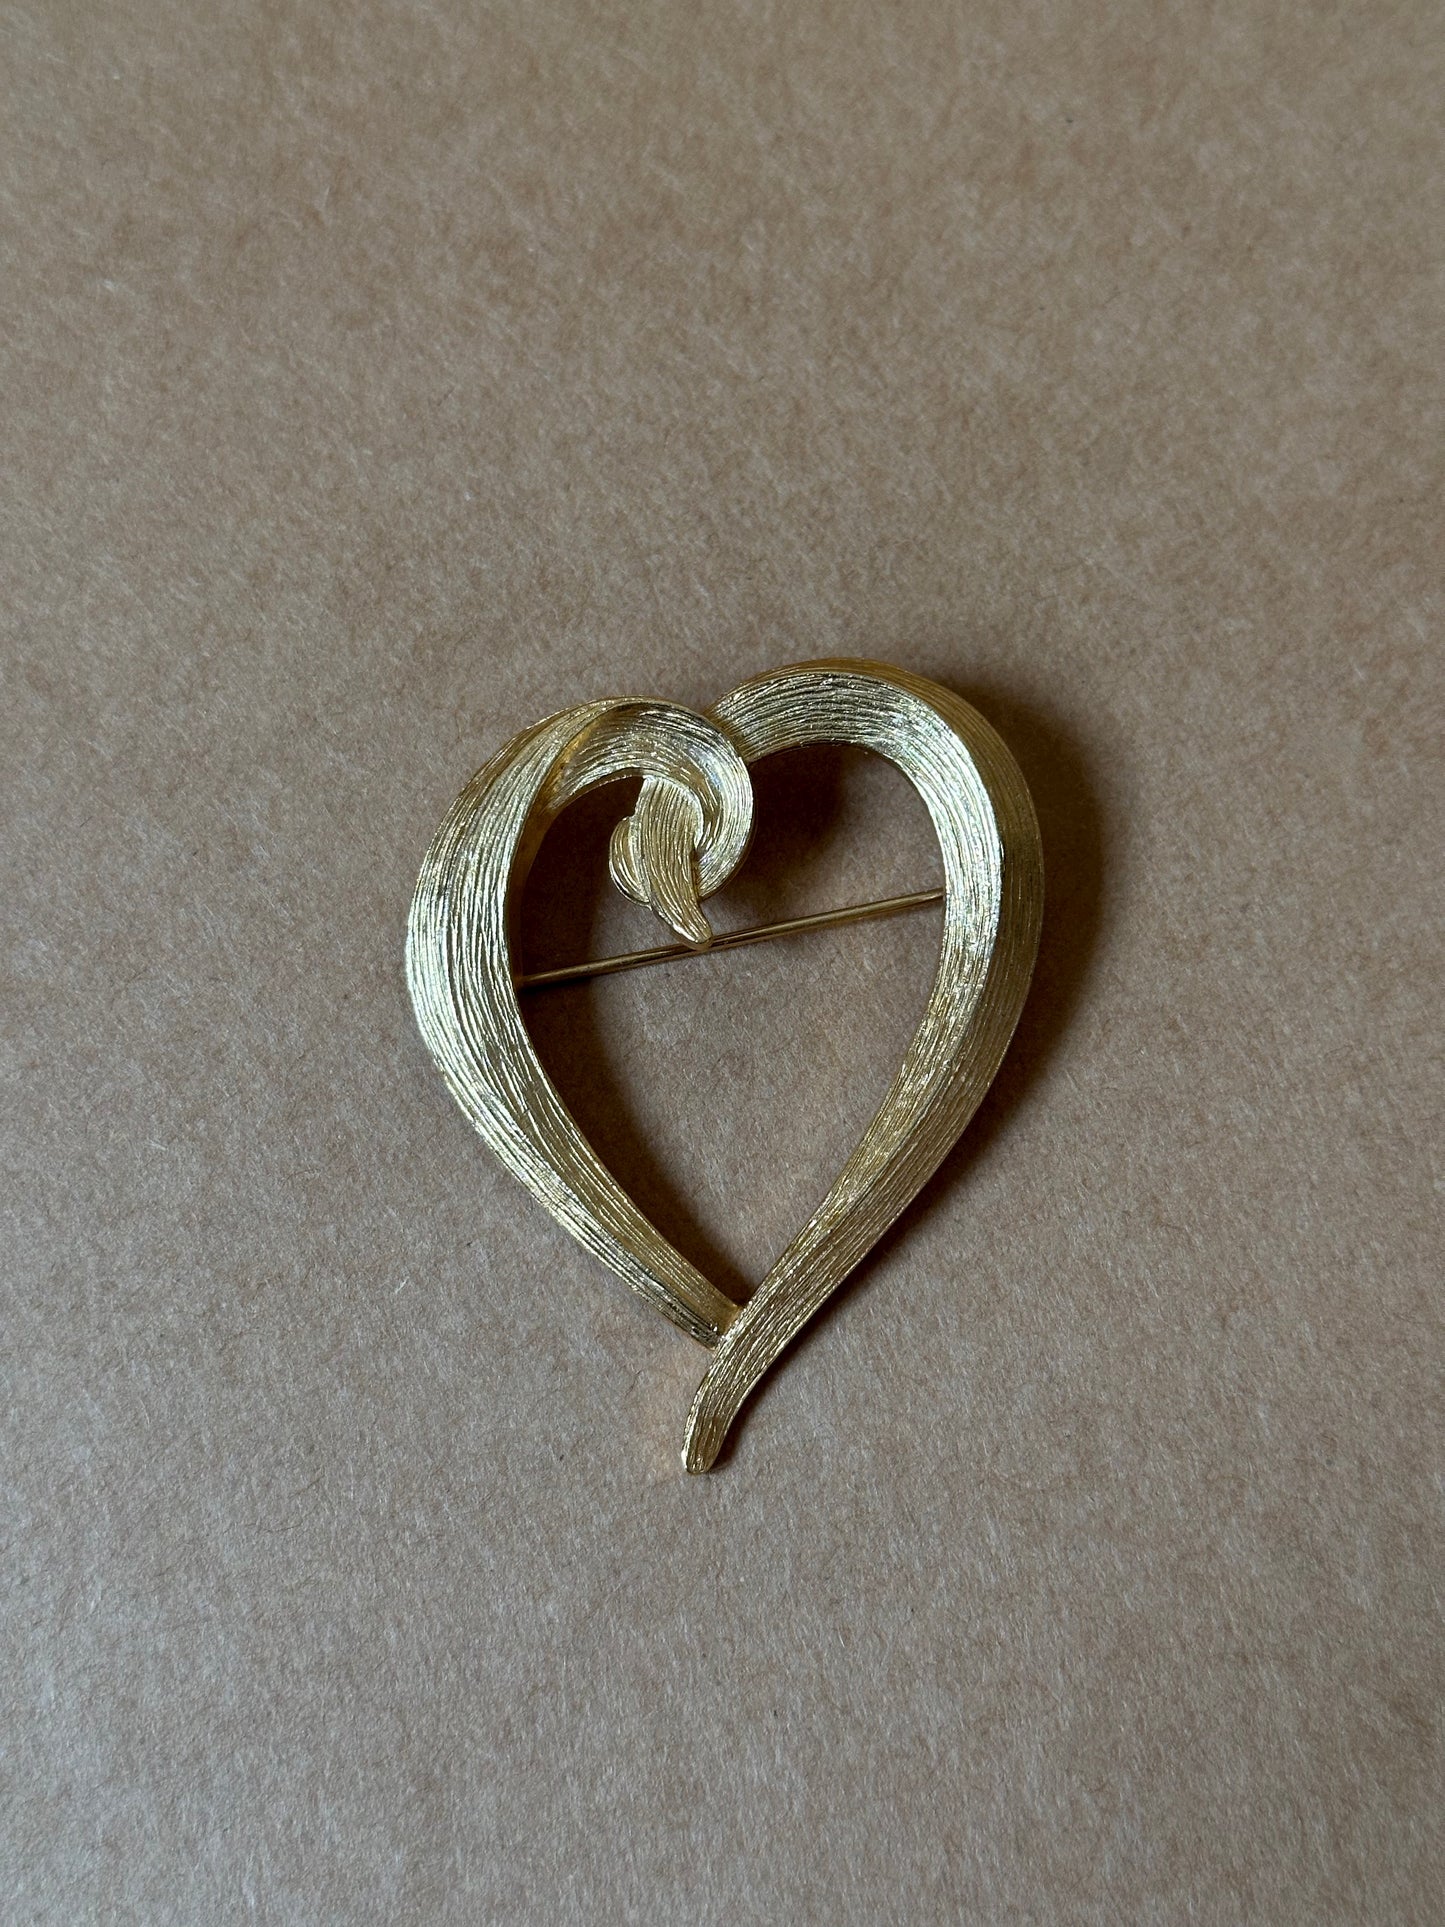 Vintage Heart-Shaped Jacques Esterel Paris Brooch